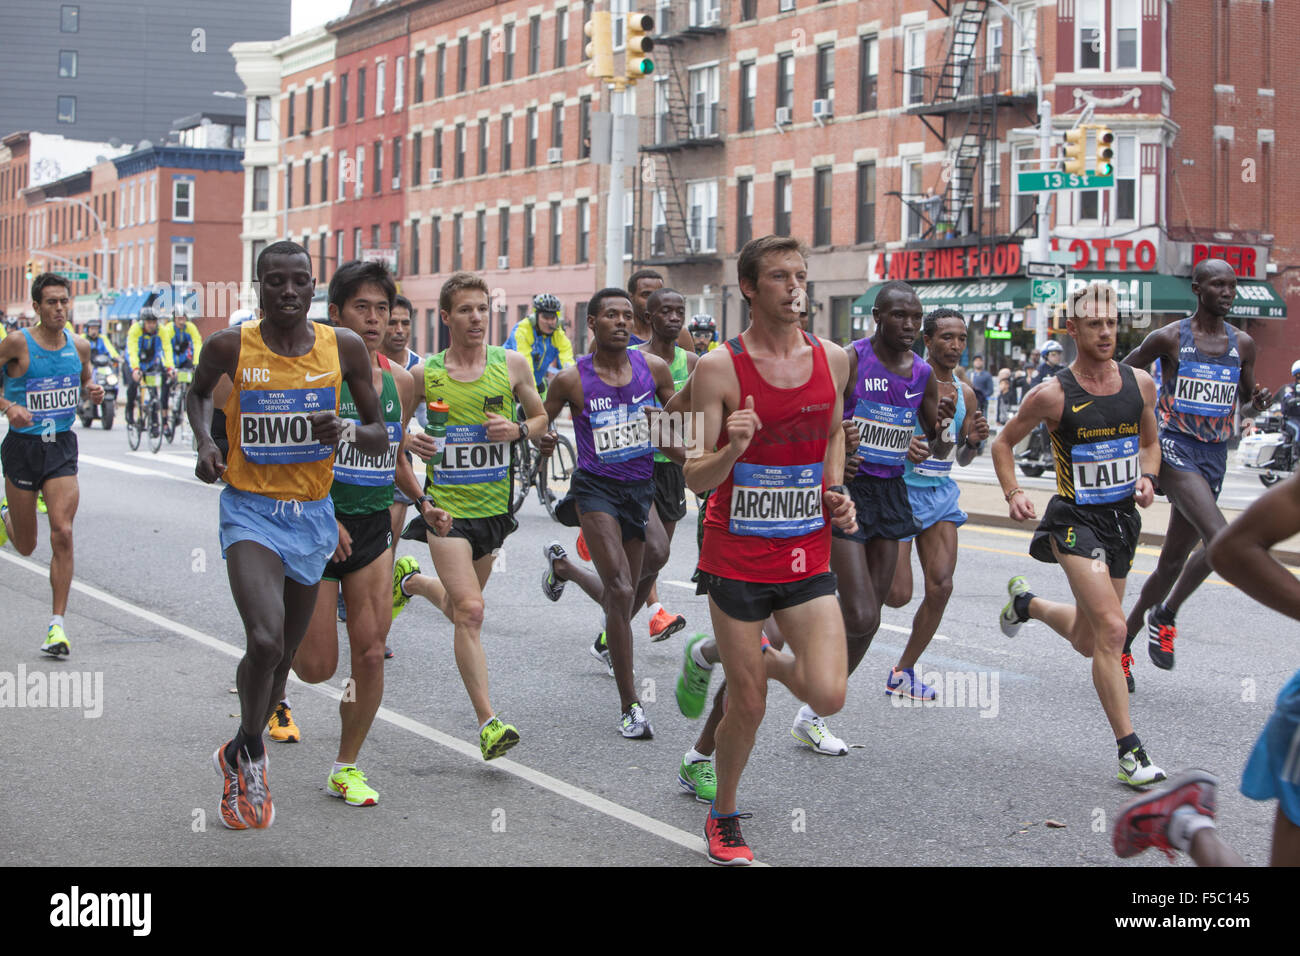 New York, New York, USA. 06Th Nov, 2015. Front runners dans le Marathon de New York 2015 le long 4e Avenue à Brooklyn avec Stanley Biwott (gauche) du Kenya le gagnant. Crédit : David Grossman/Alamy Live News Banque D'Images